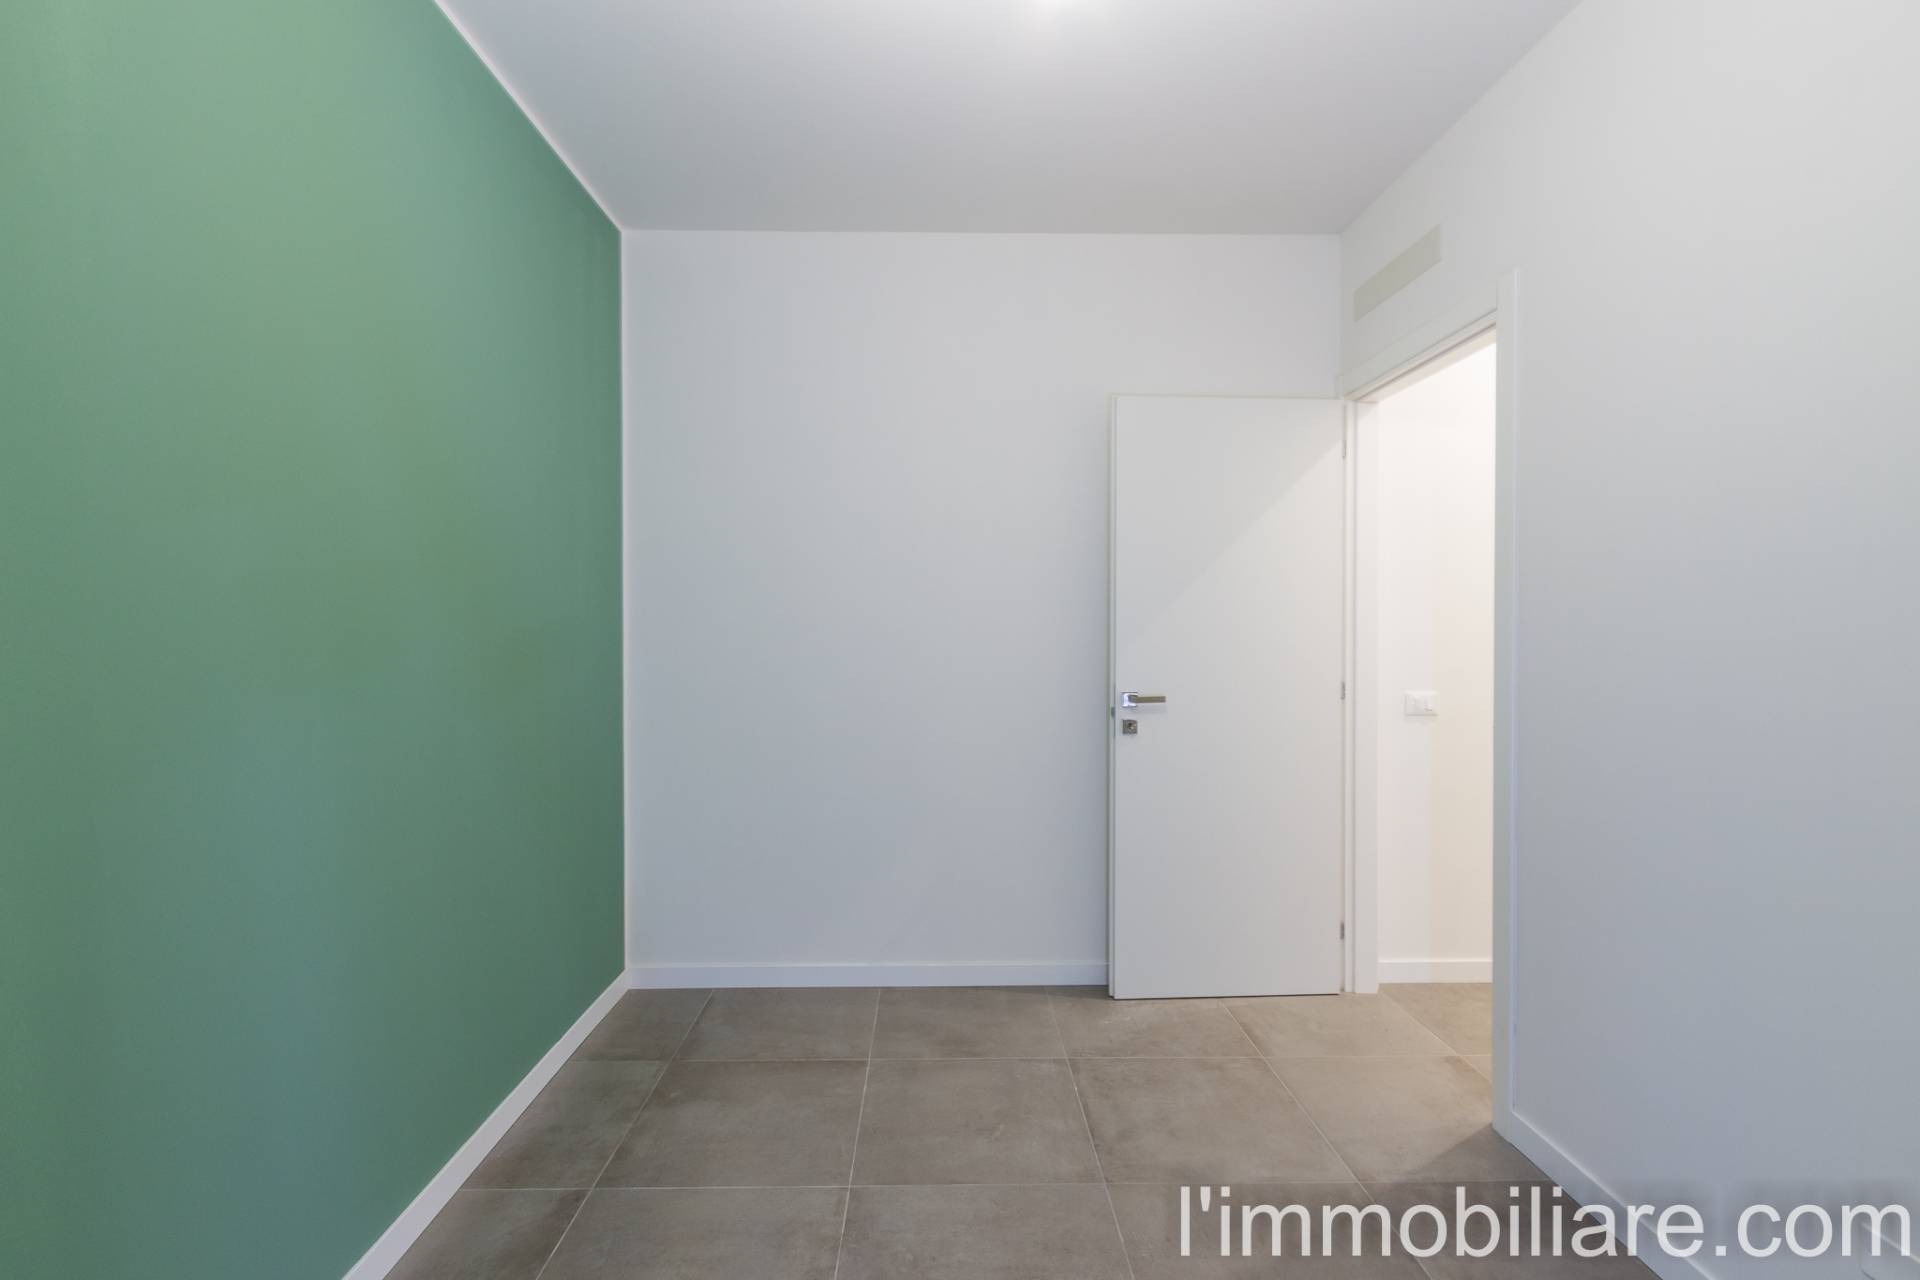 Appartamento in Vendita a Verona: 3 locali, 85 mq - Foto 20